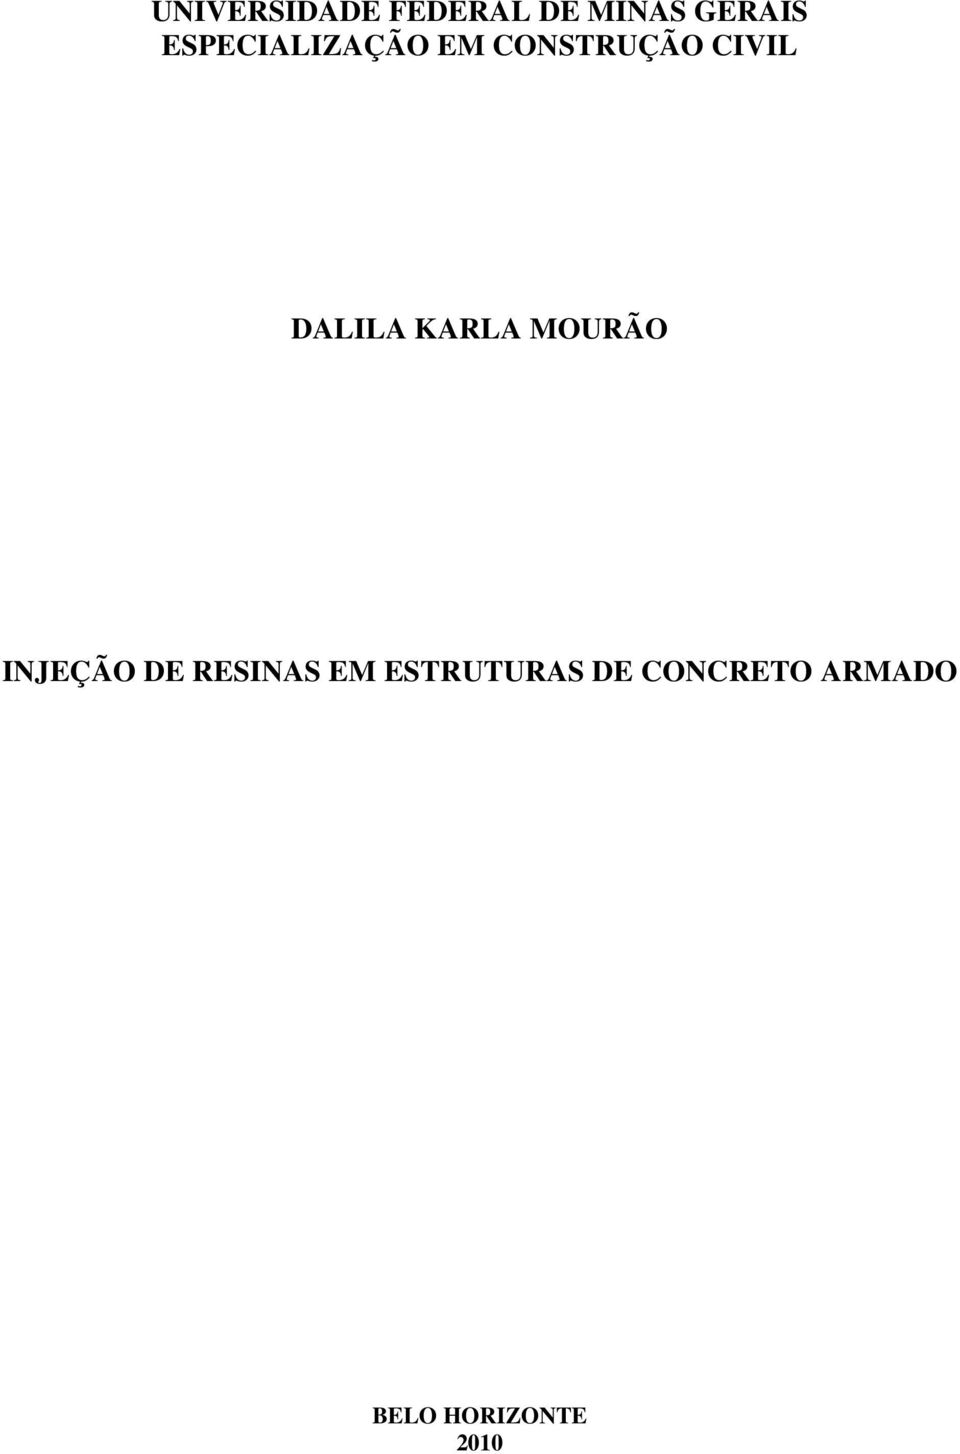 DALILA KARLA MOURÃO INJEÇÃO DE RESINAS